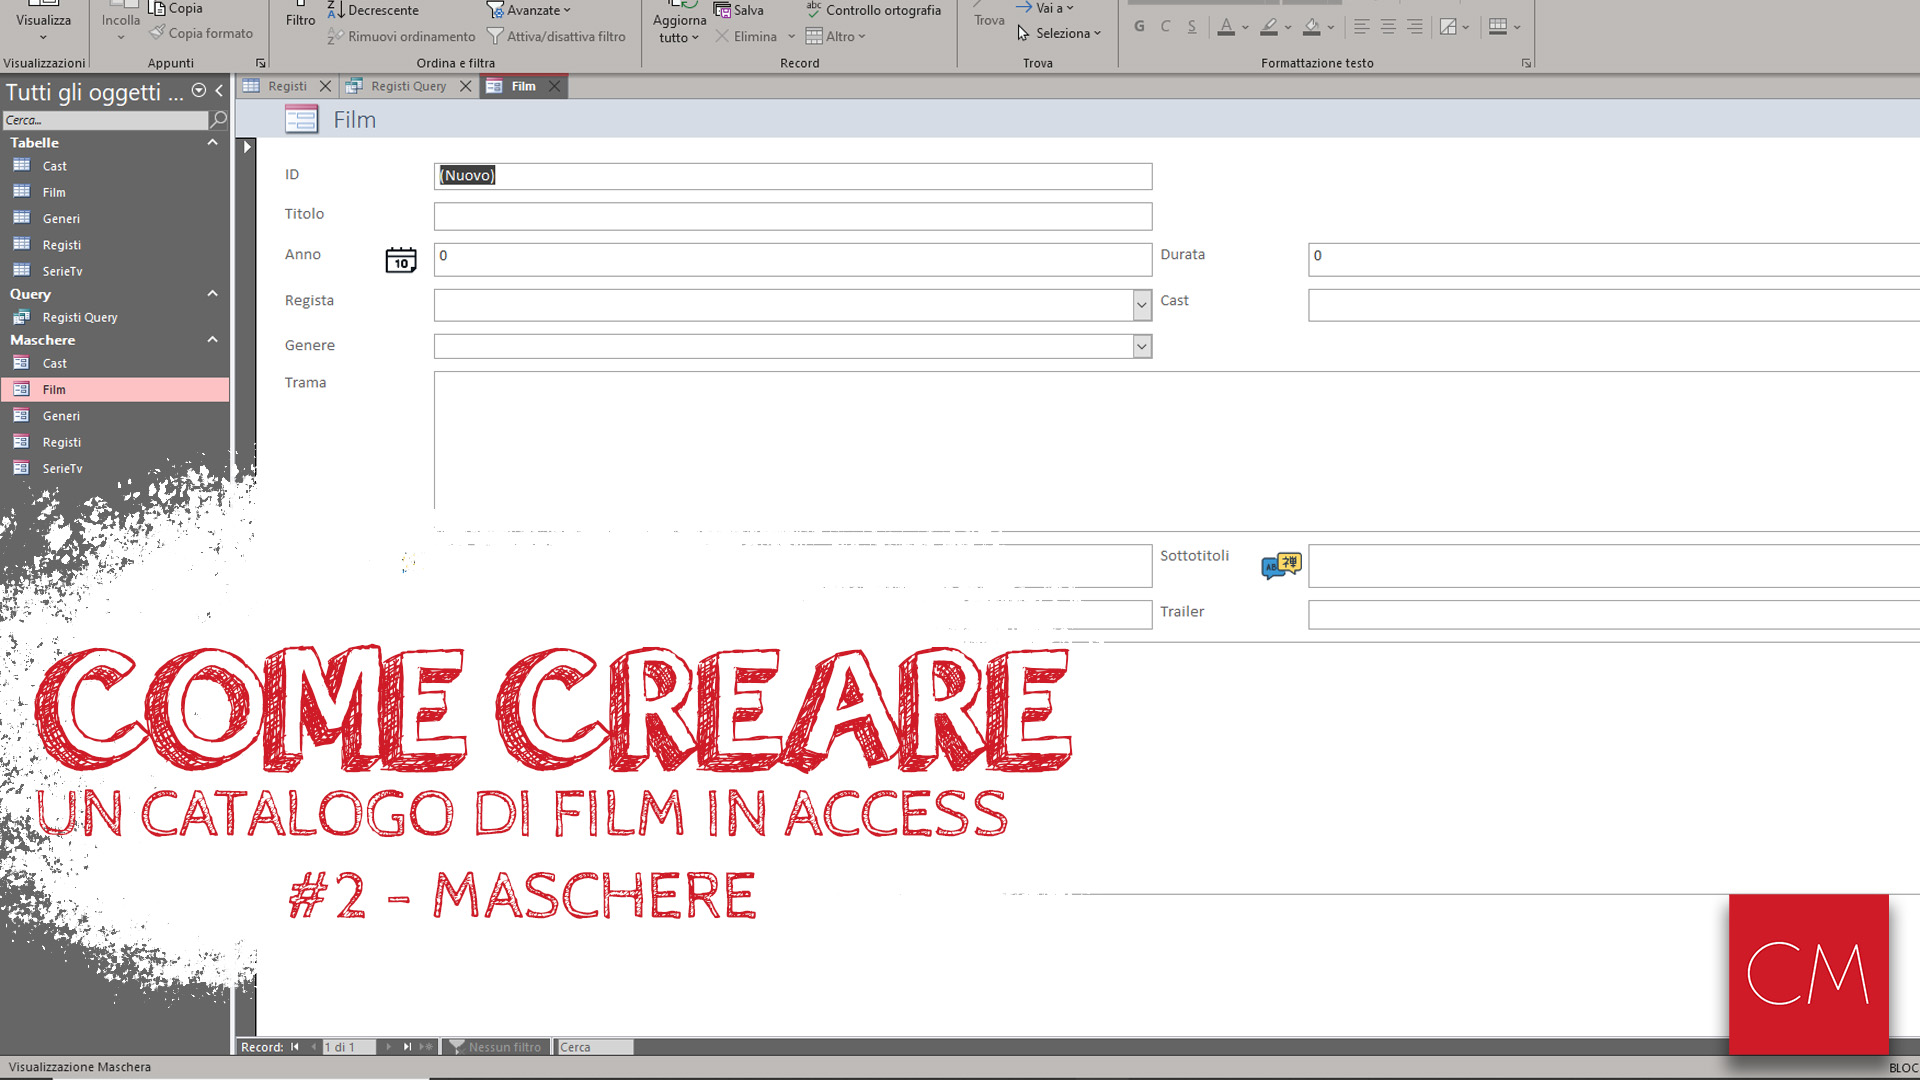 Creare un Catalogo di Film in Access - #2 - Maschere